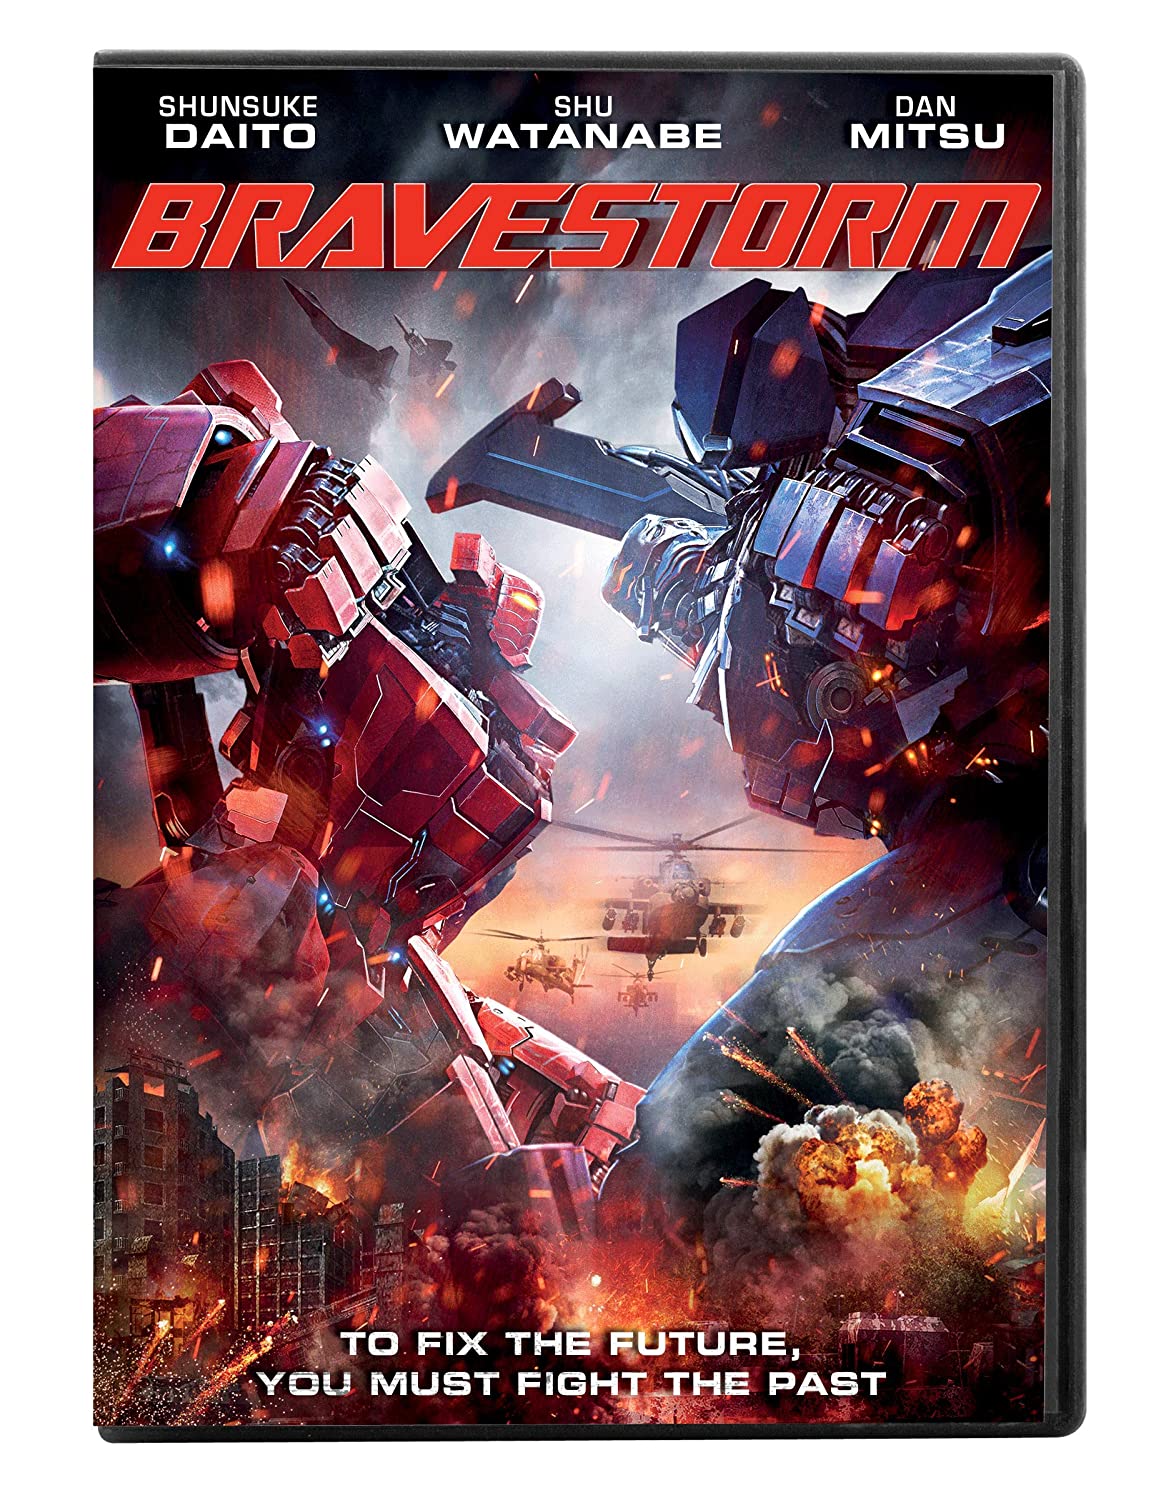 Bravestorm DVD Review